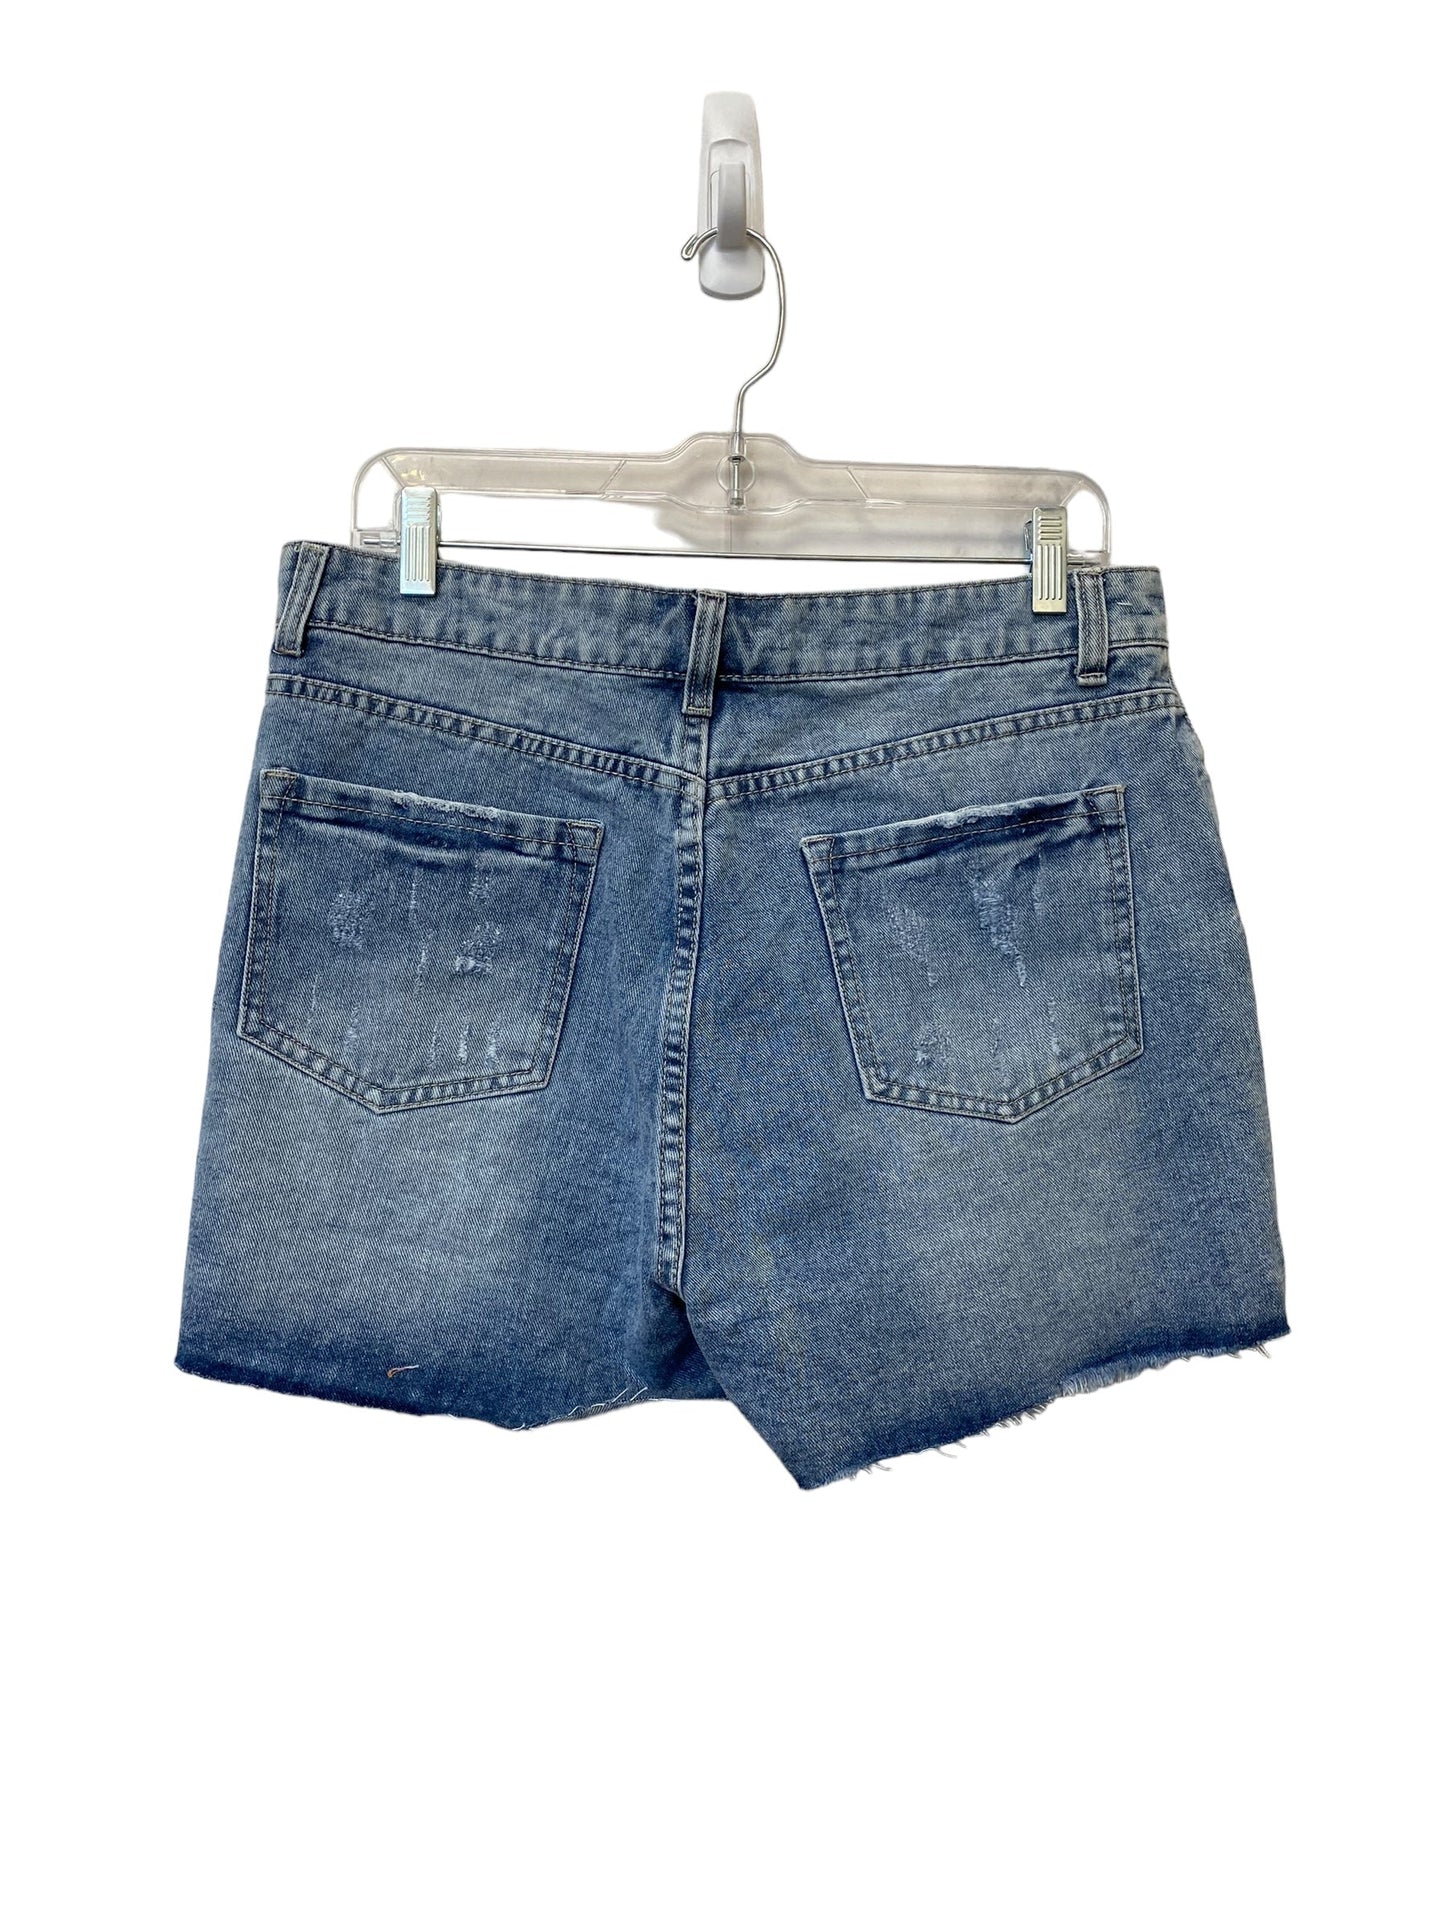 Blue Shorts Clothes Mentor, Size L